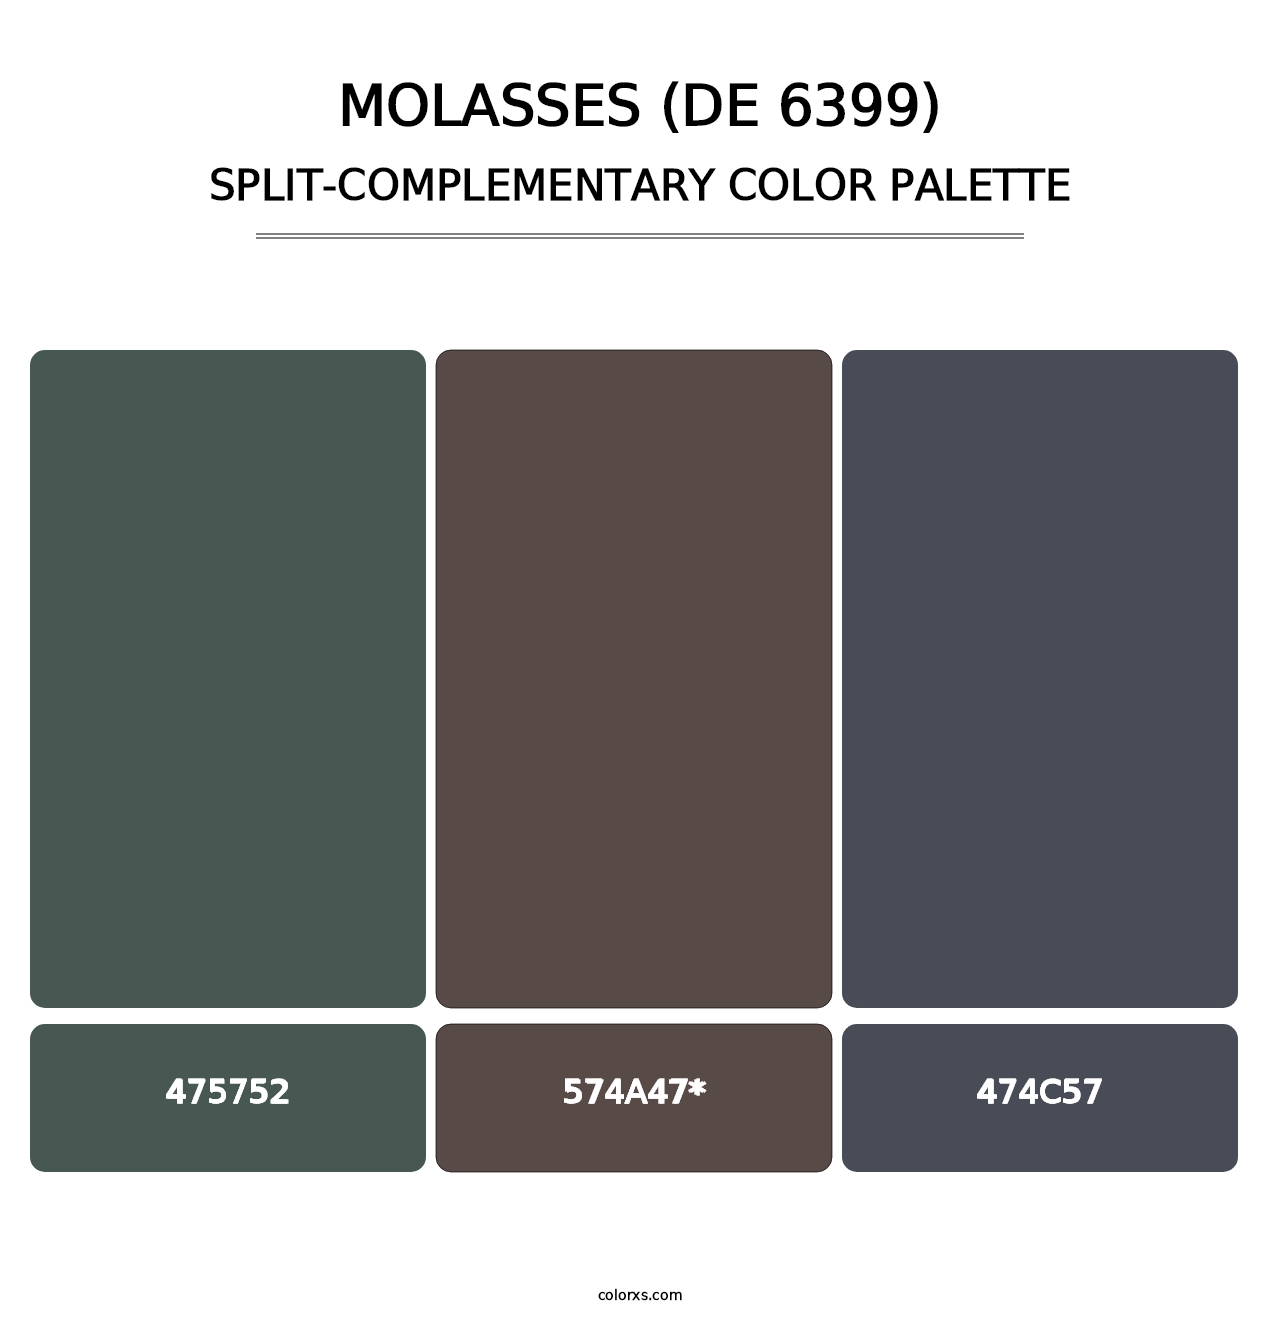 Molasses (DE 6399) - Split-Complementary Color Palette